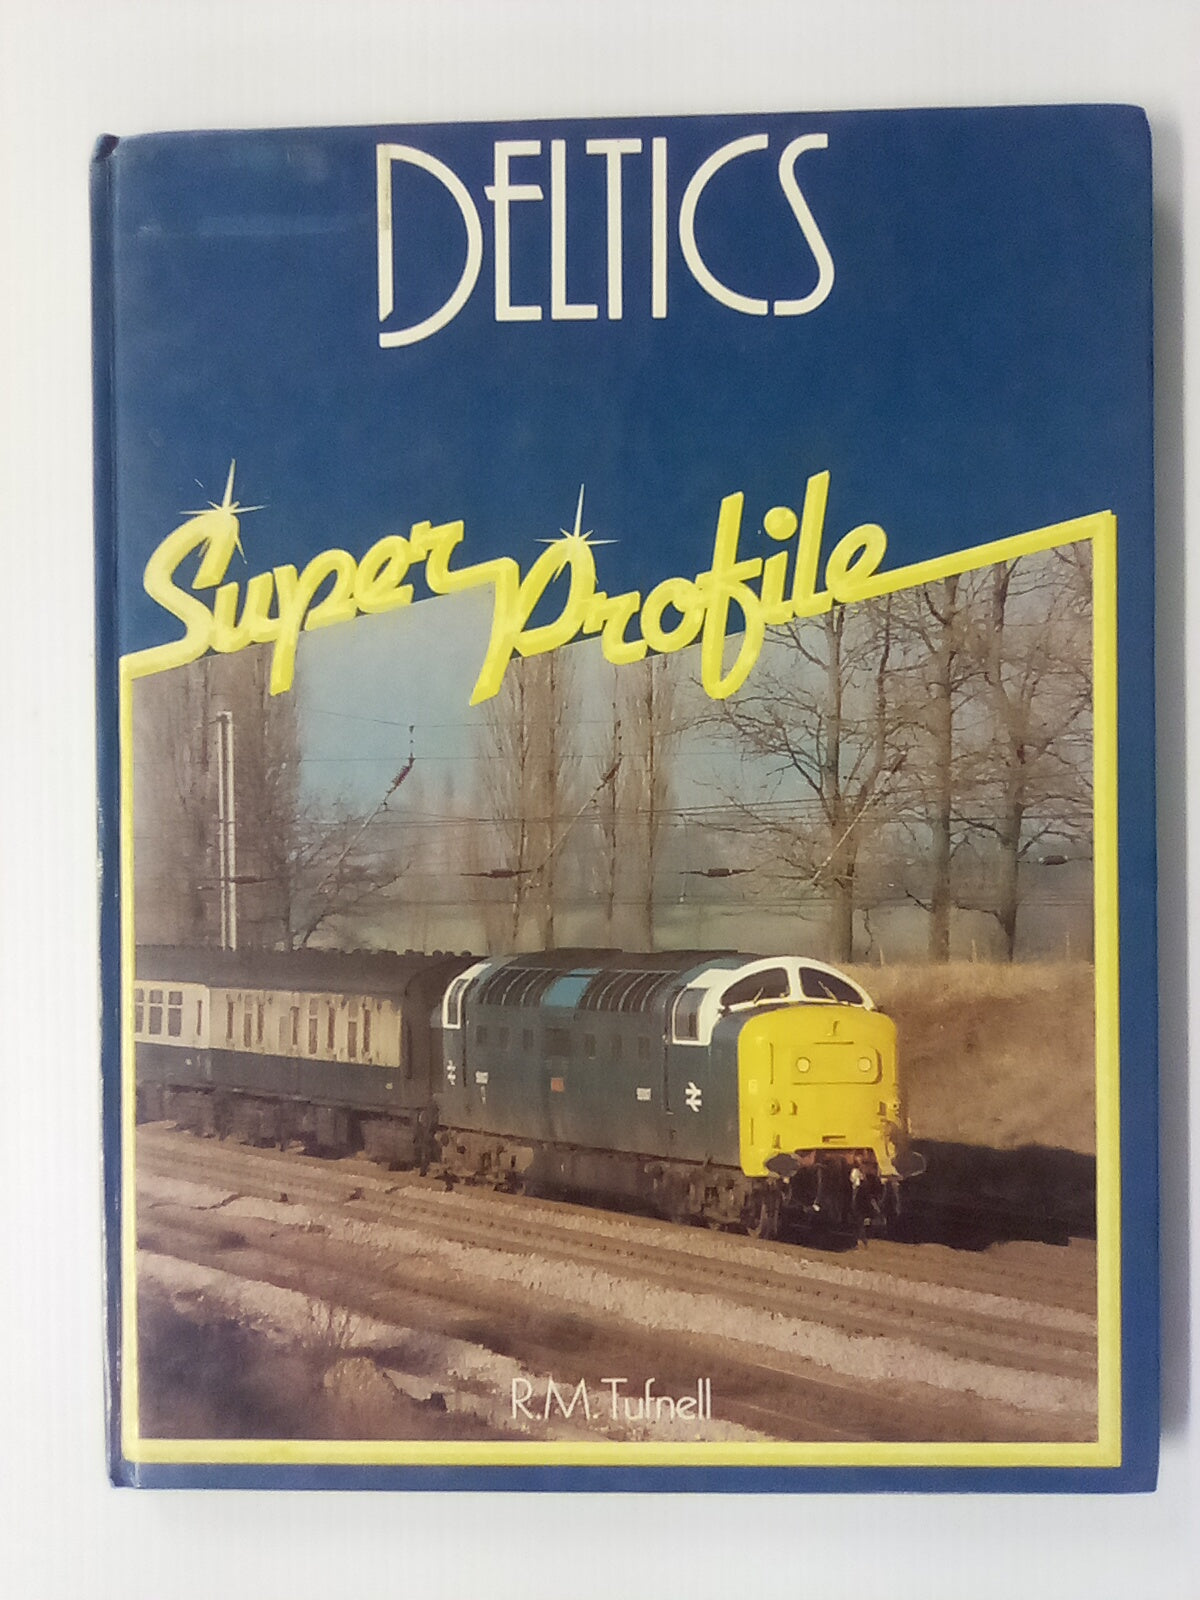 Deltics Super Profile by R.M. Tufnell